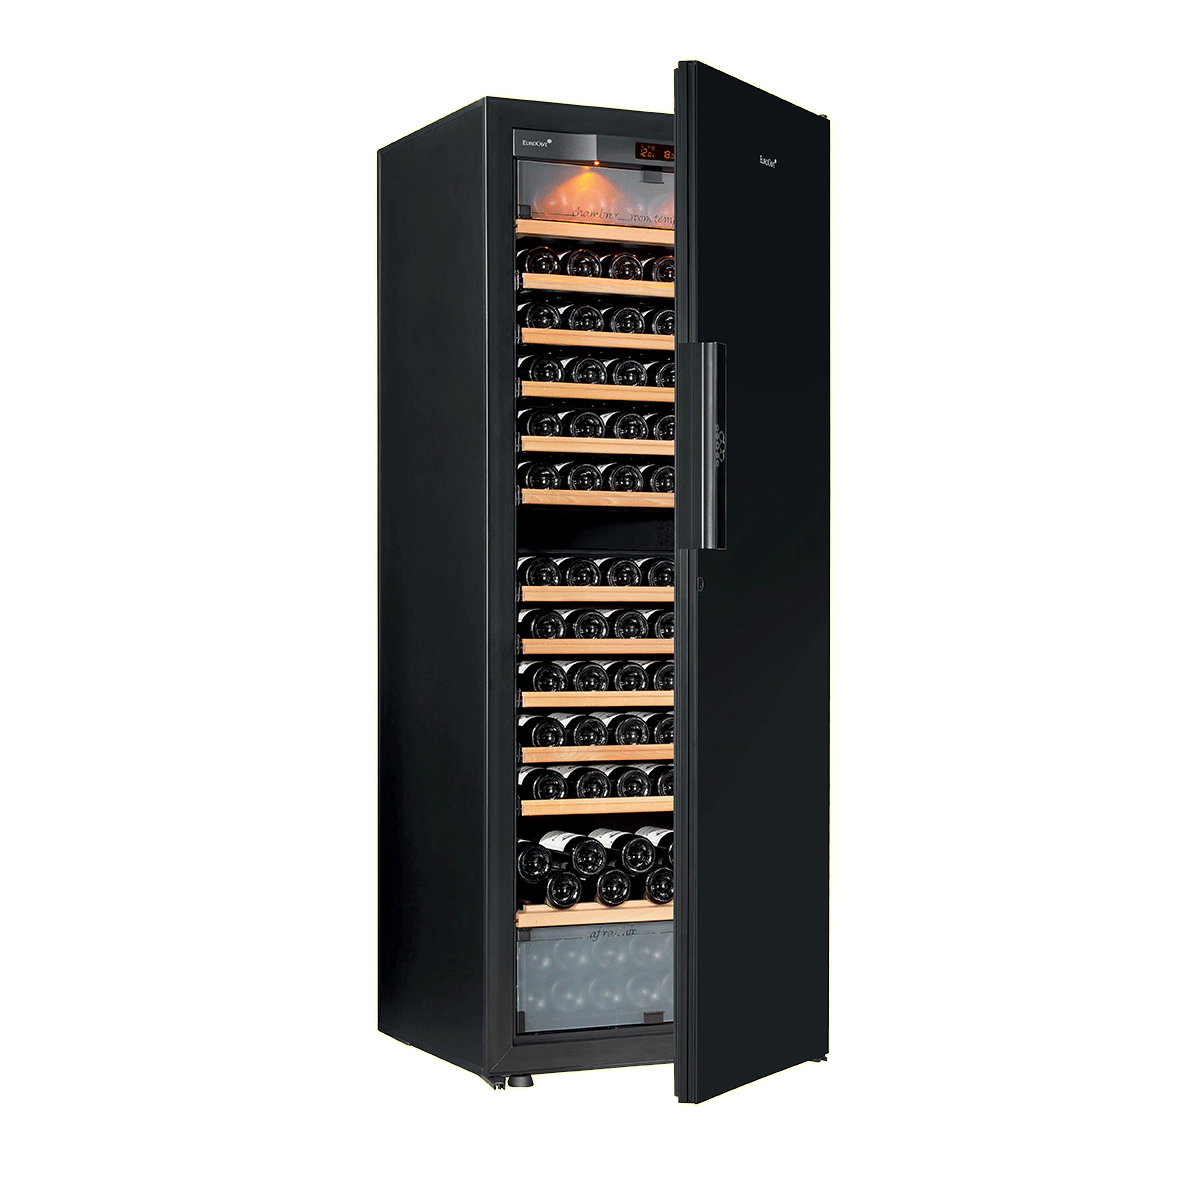 【Eurocave】E-PURE-L Multi-function 3 temperature wine cabinet Pure, Large model